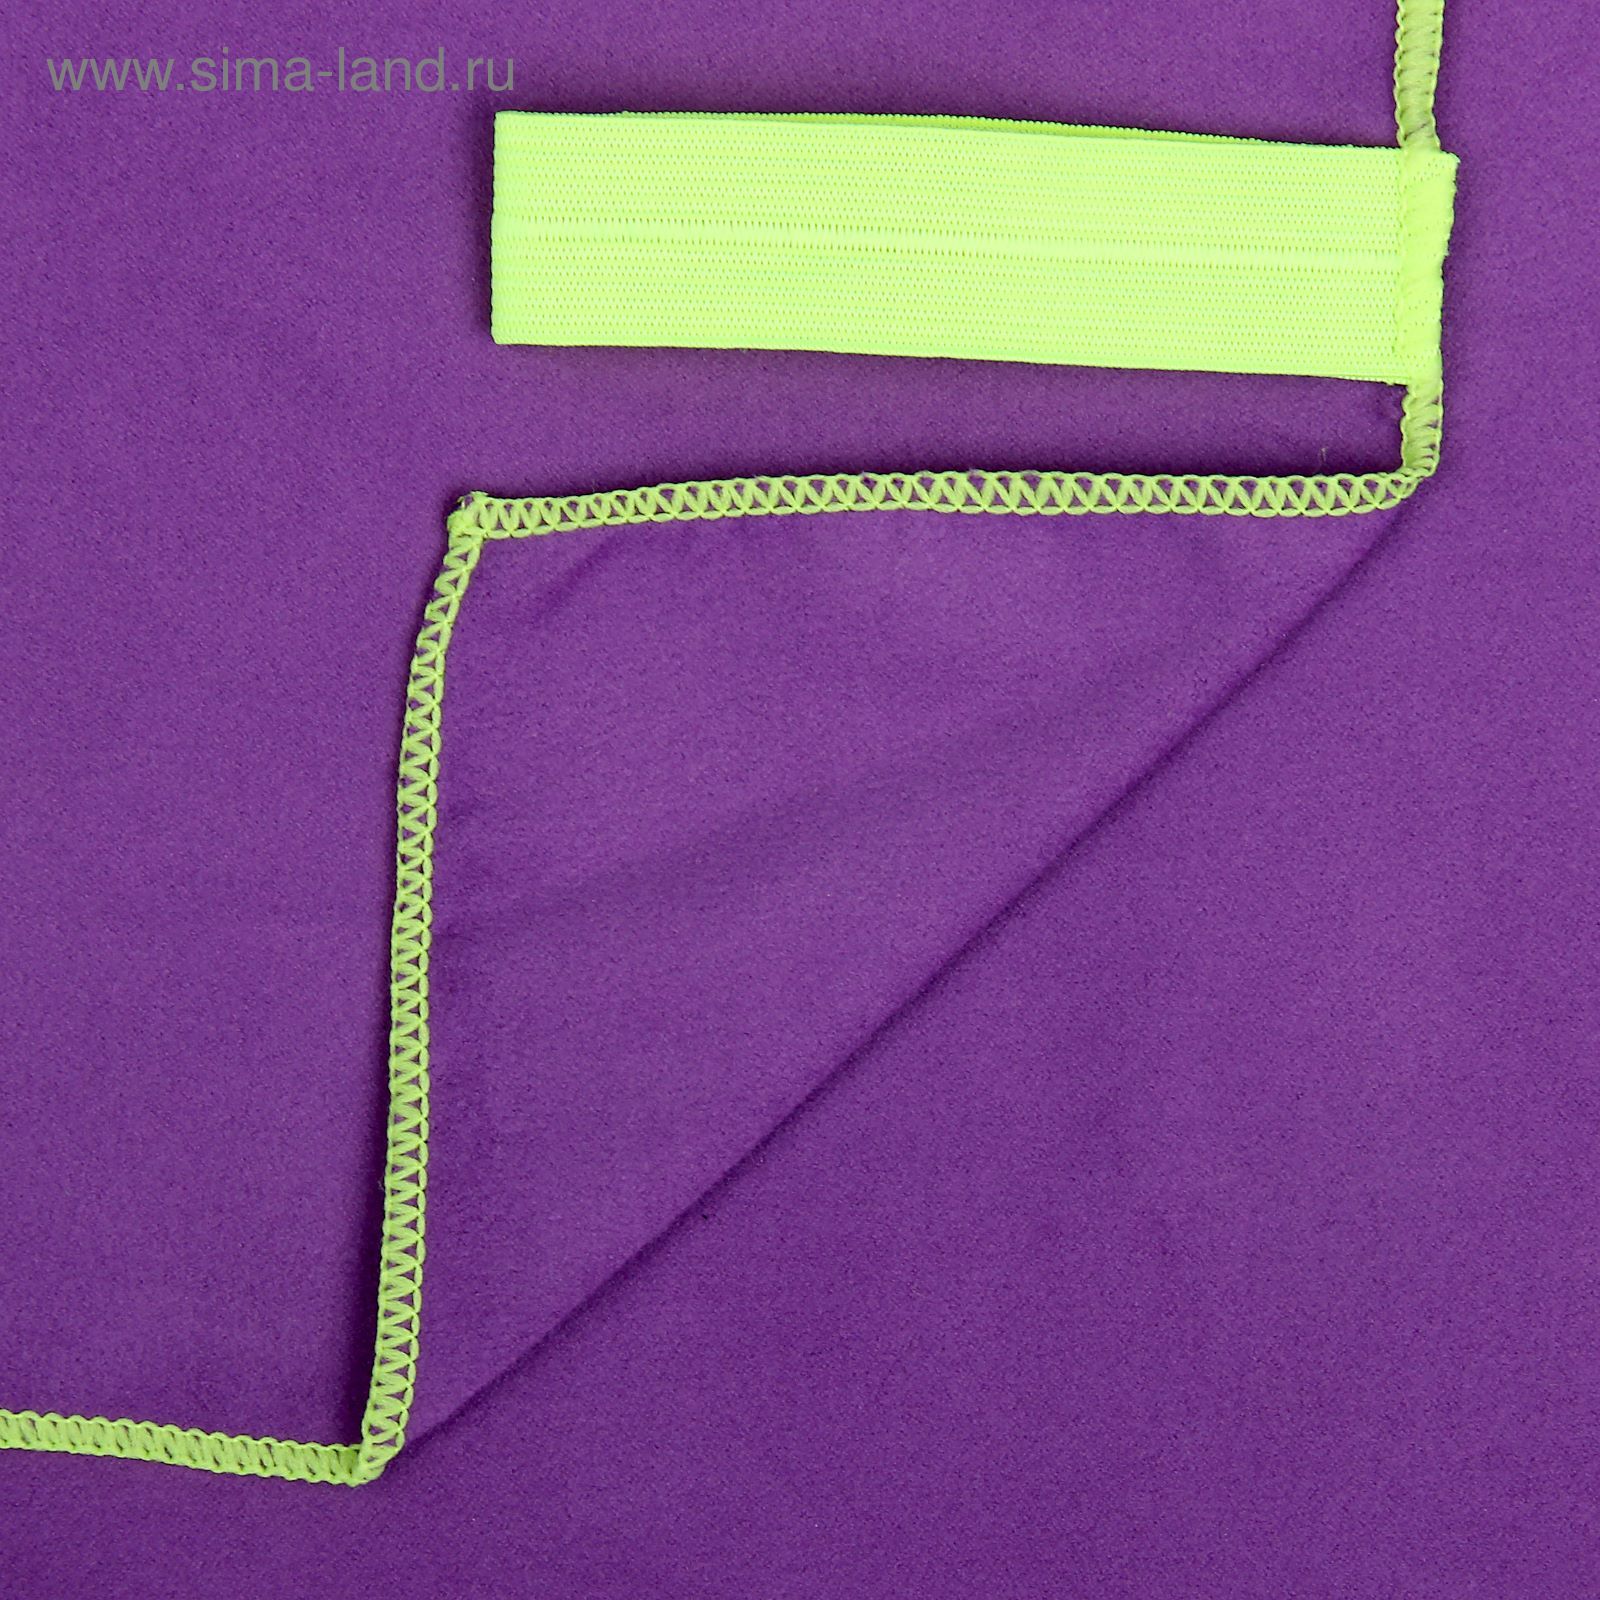 Спортивное полотенце ONLITOP, размер 40х55 см, фиолетовый, 200 г/м2